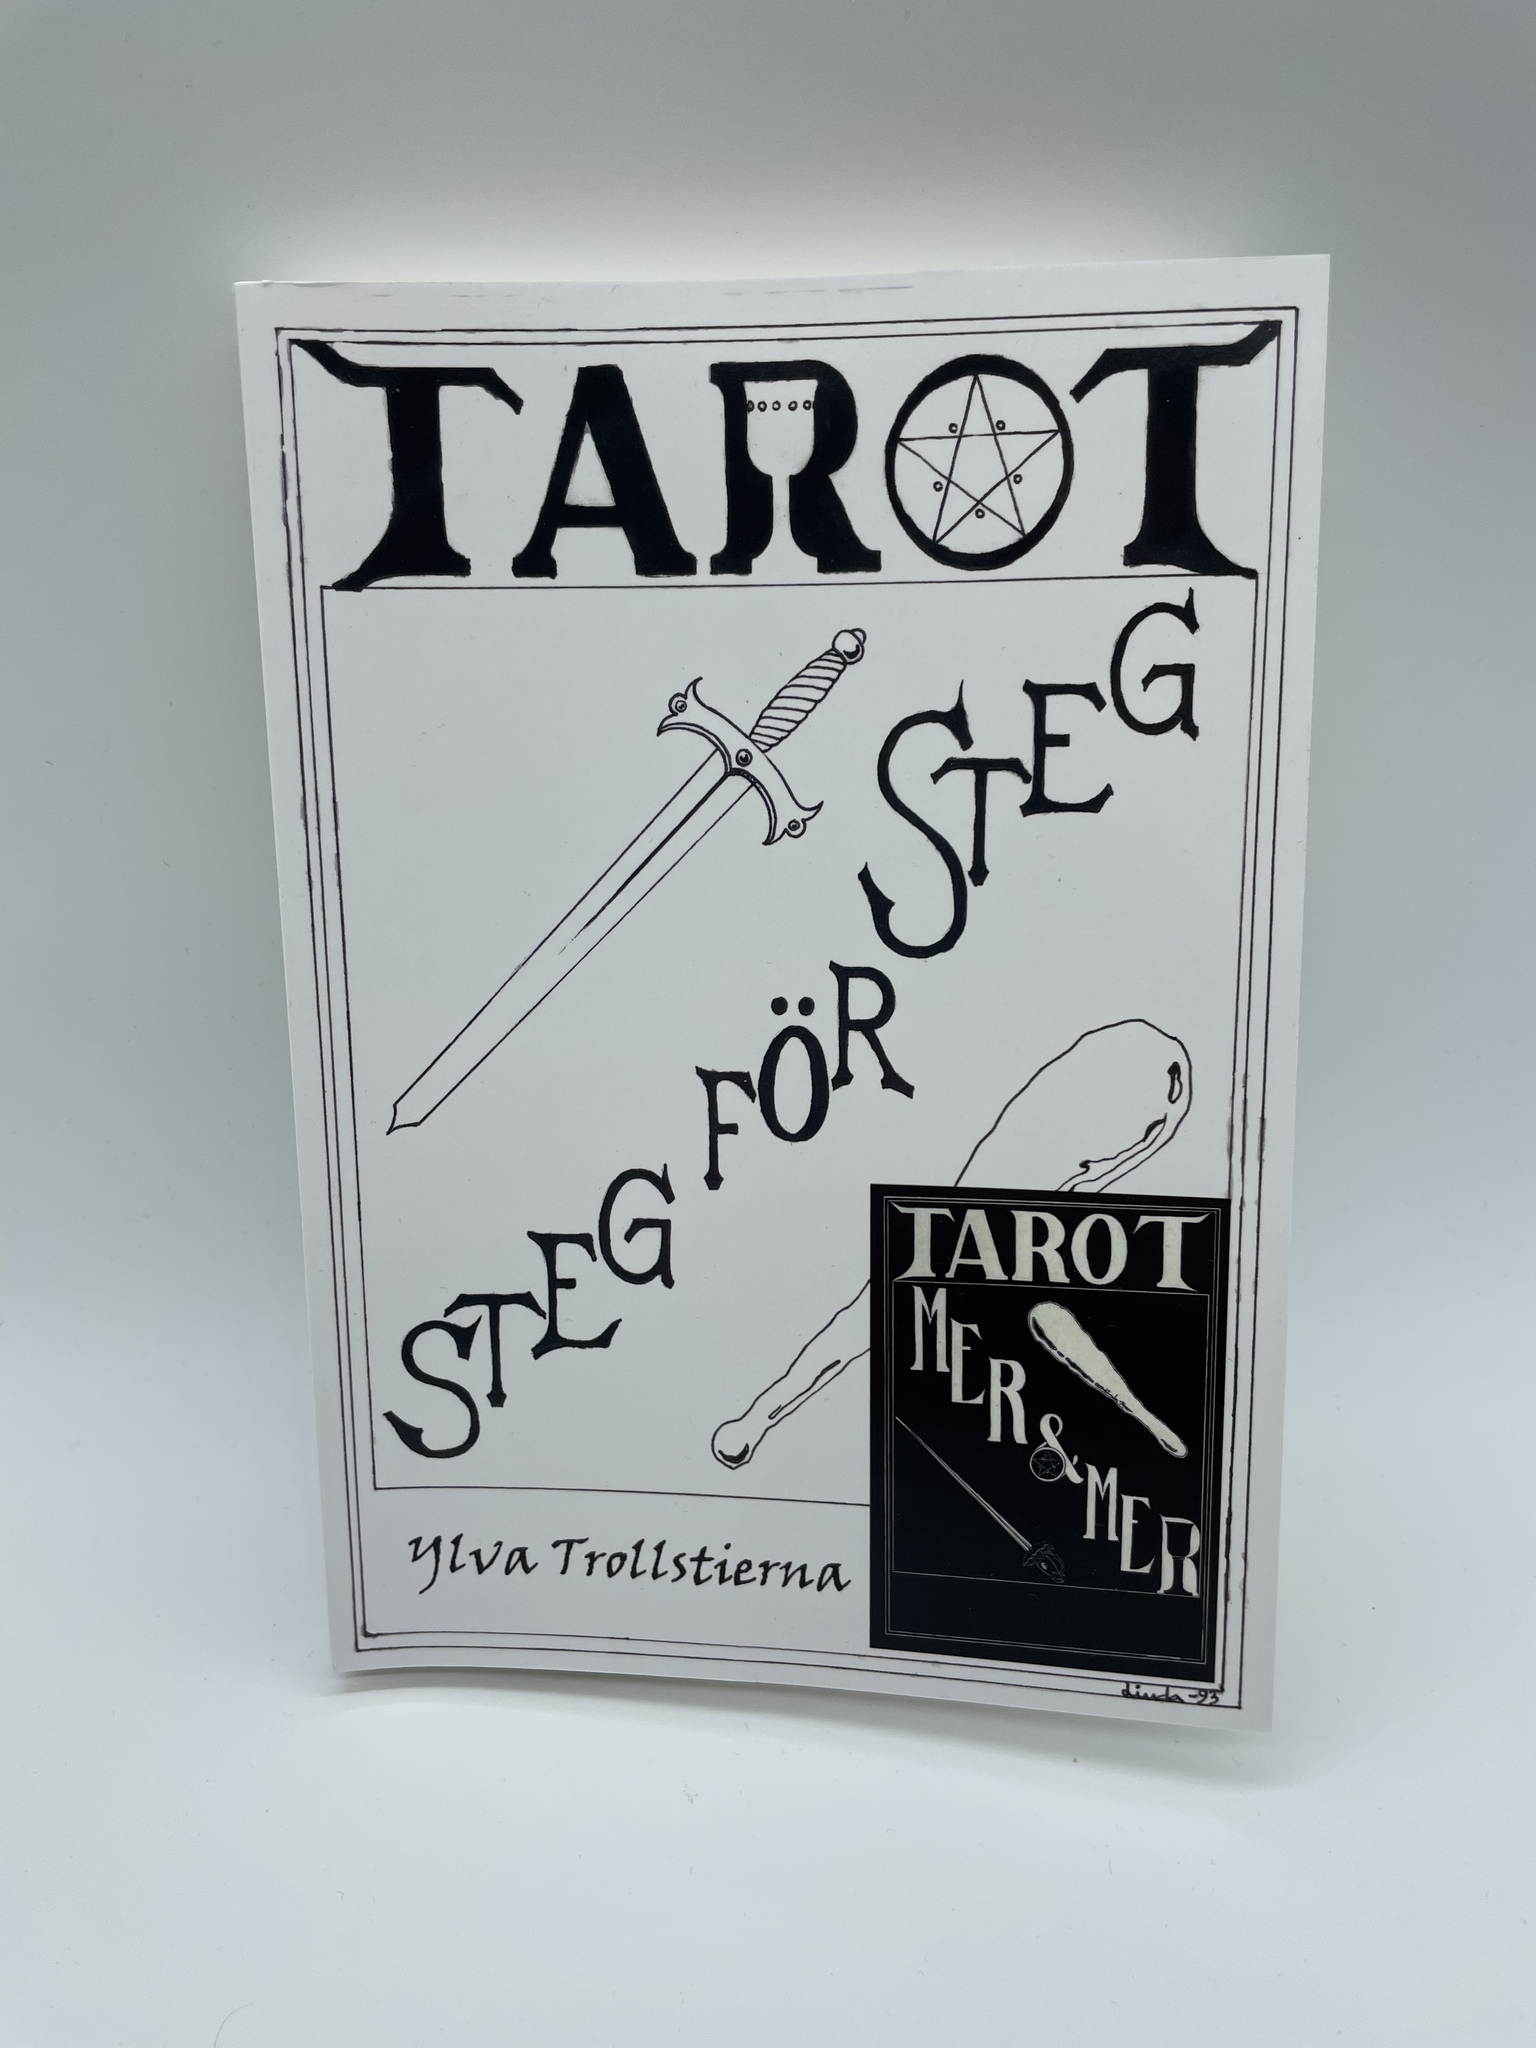 Tarot Steg för steg (mer & mer)